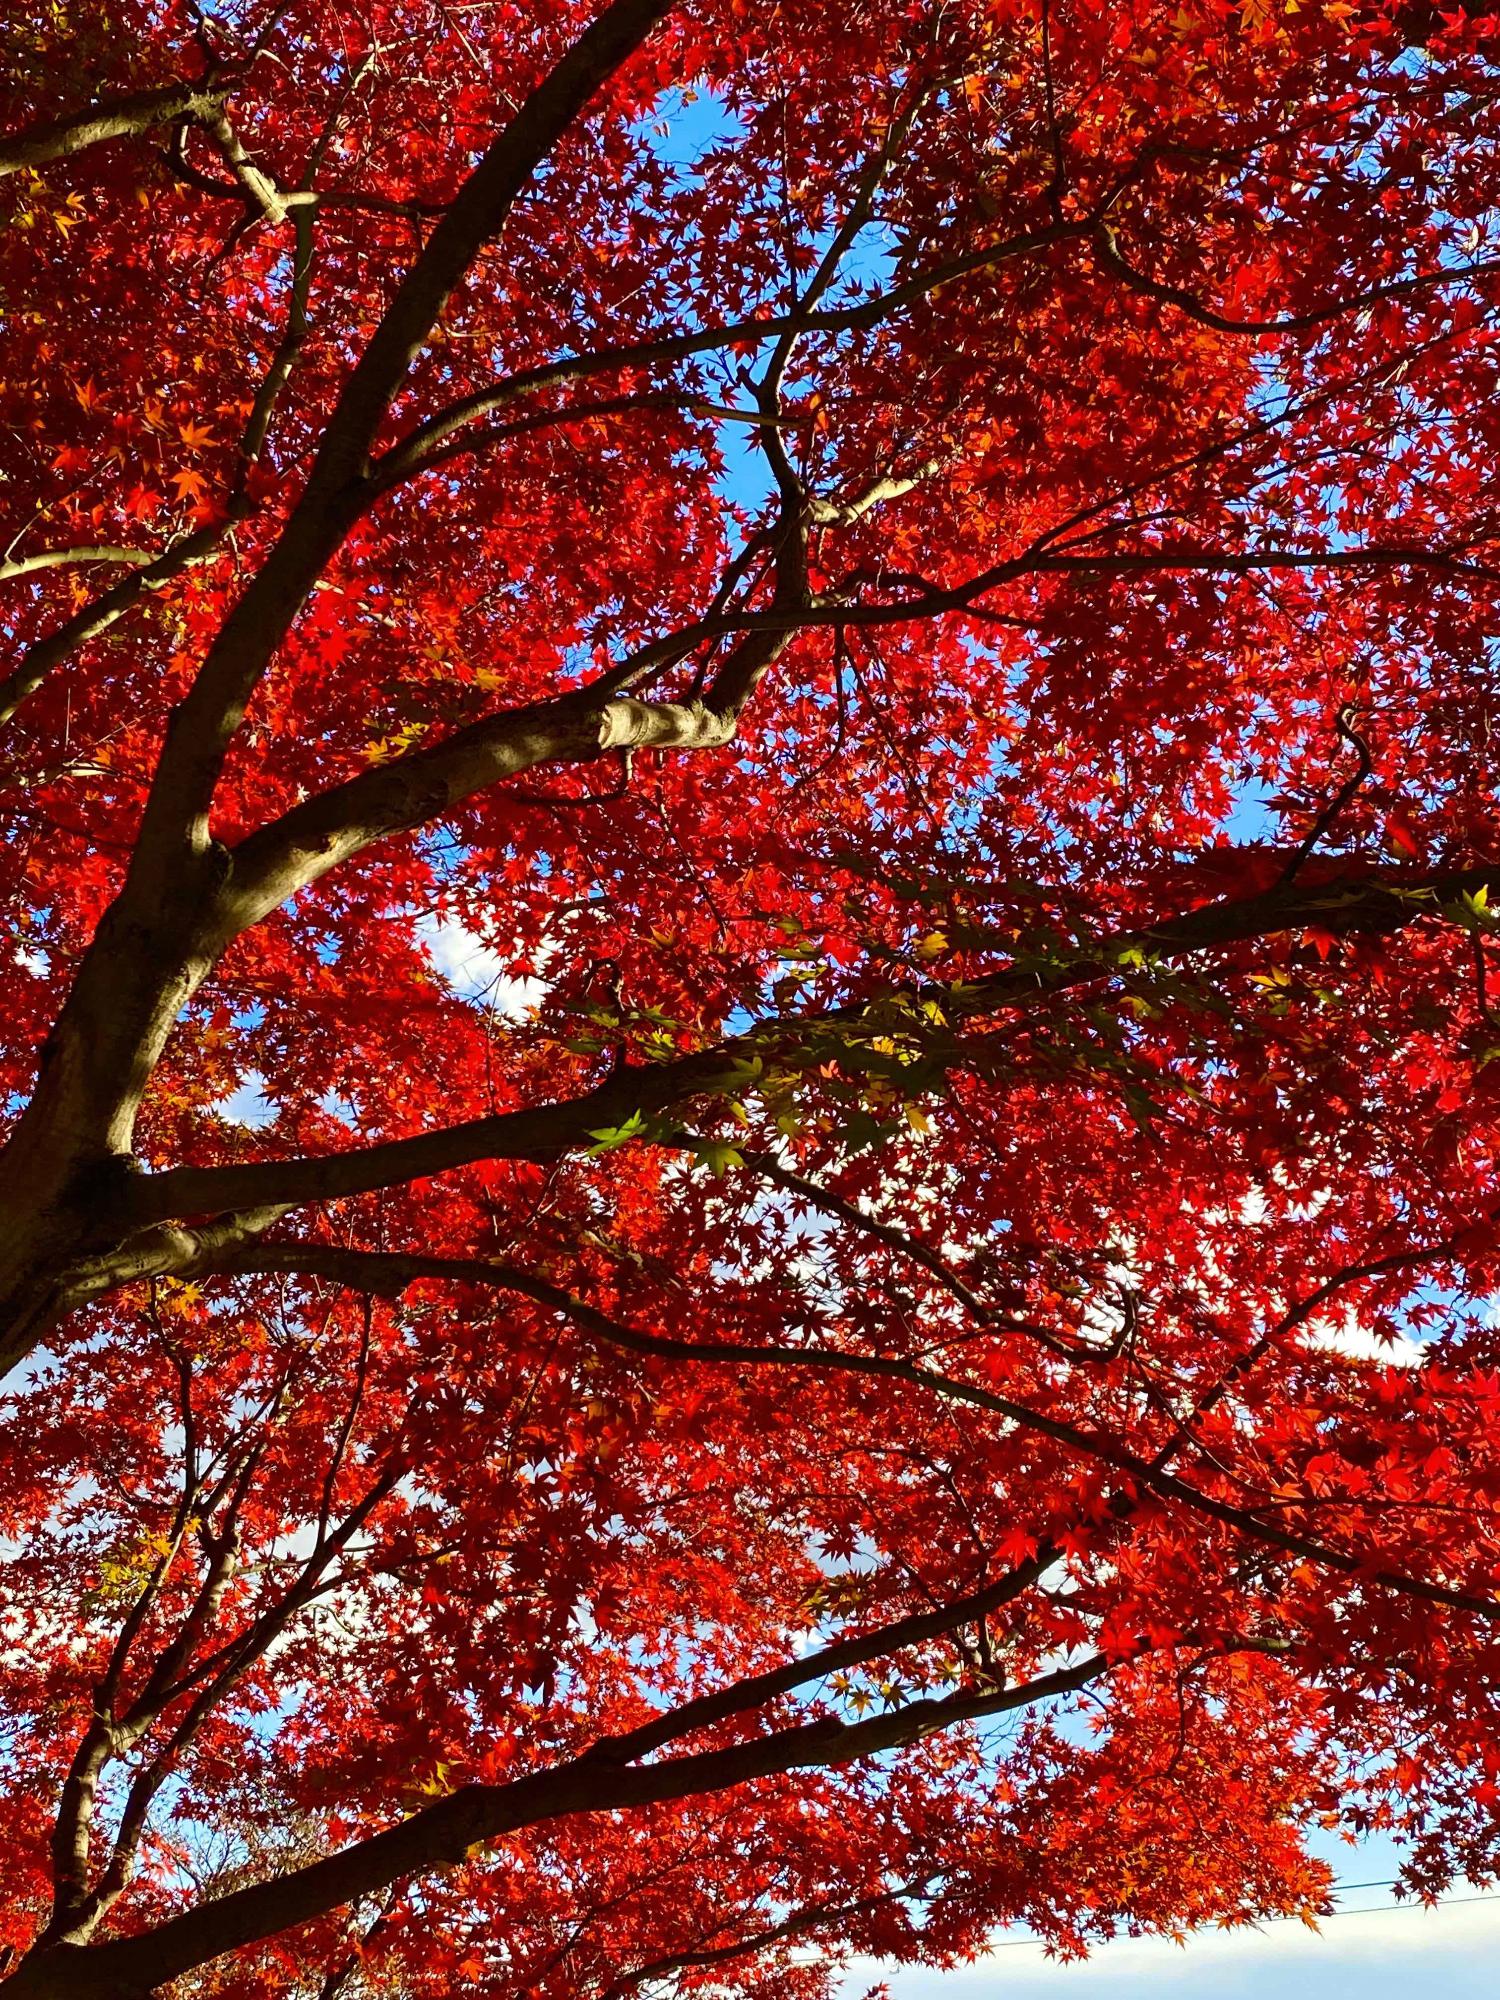 鳶尾中央公園で下から撮影された、空を覆いつくすような真っ赤なもみじの木